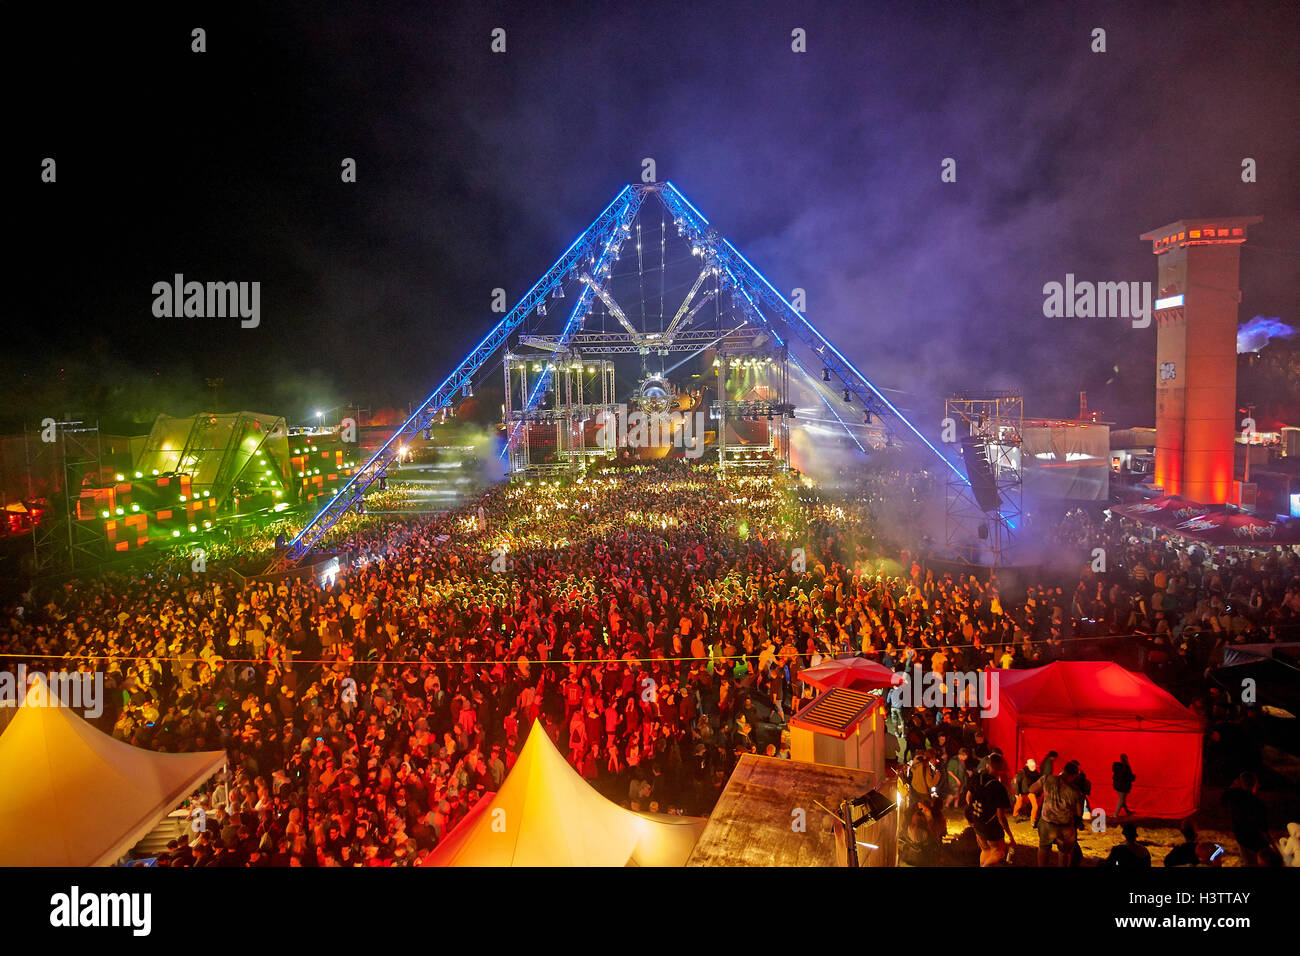 La Folla di fronte al palco, Festival europeo Nature One 2016 musica dance elettronica, Kastellaun, Renania-Palatinato, Germania Foto Stock